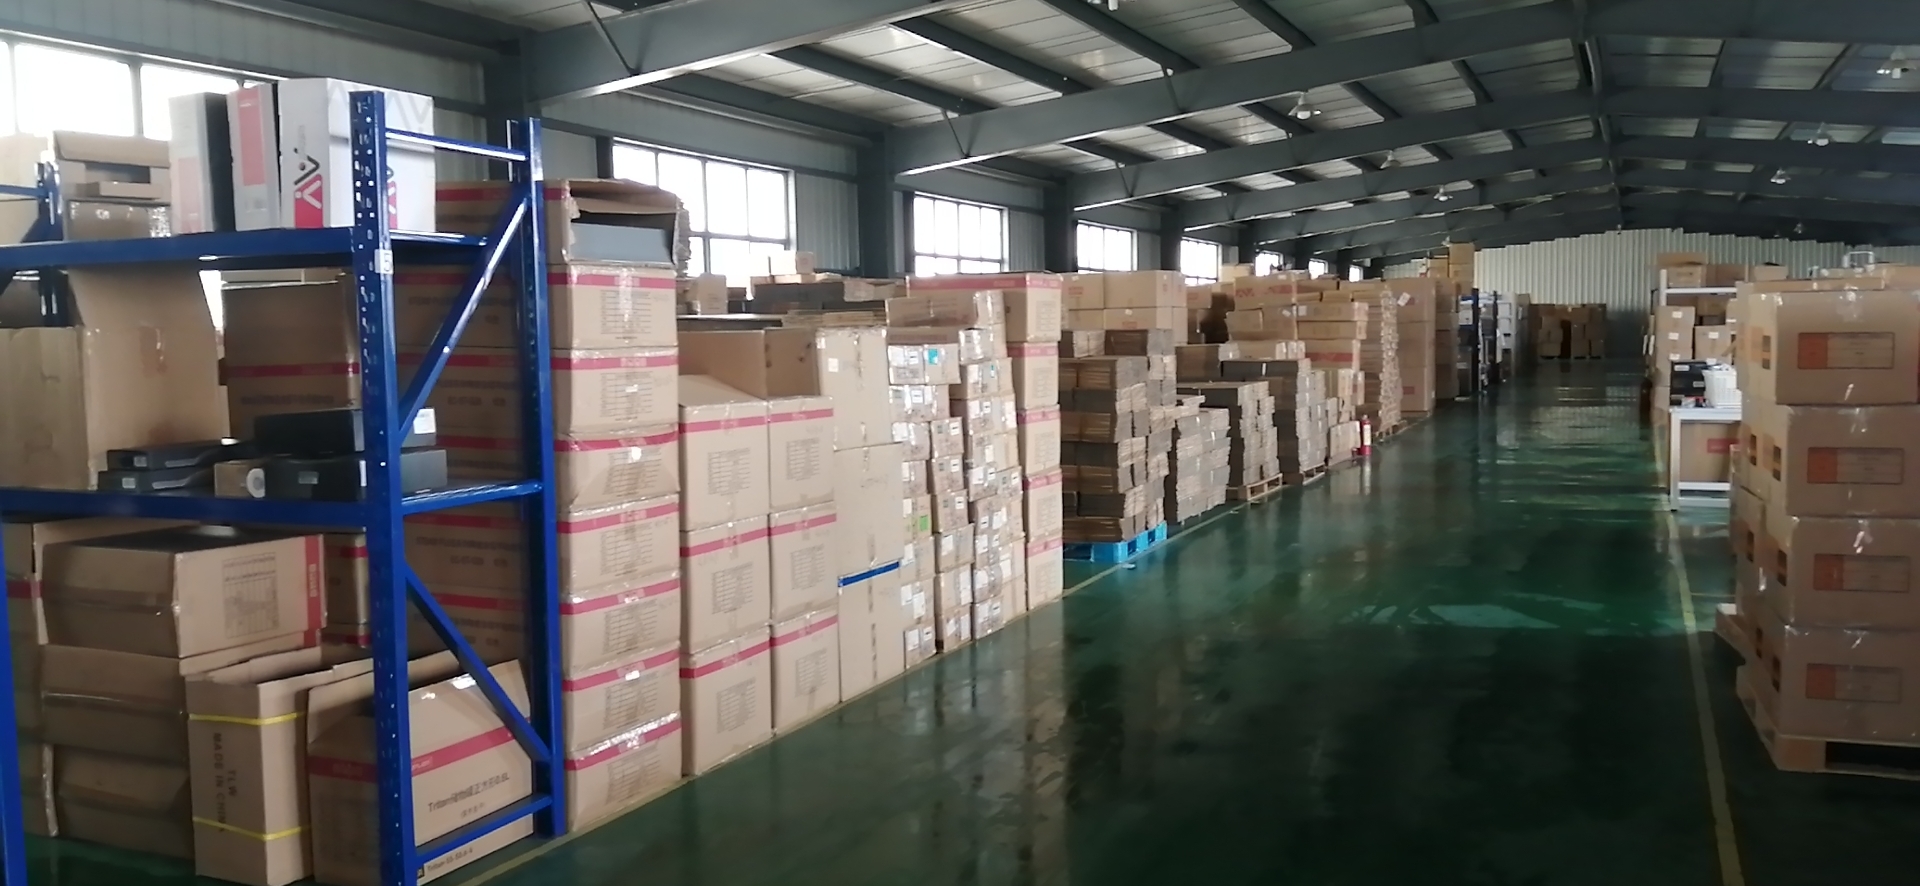 上海仓储外包提供快速分拣可存储机械设备